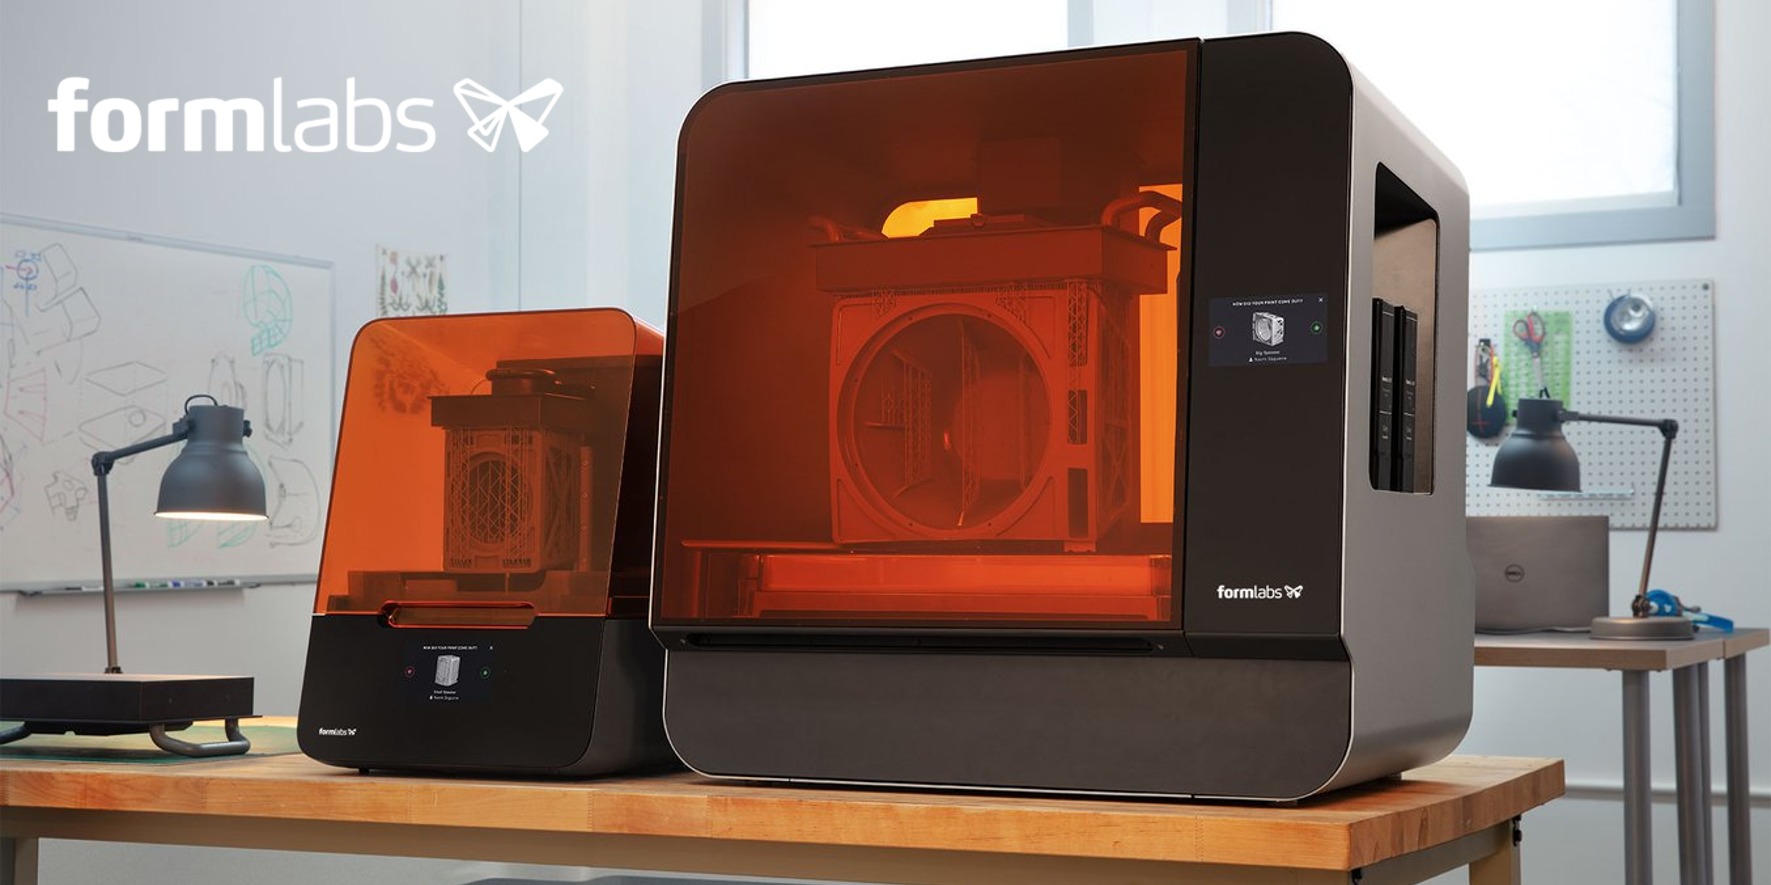 工業品質を実現する
デスクトップ型光造形式3Dプリンタ